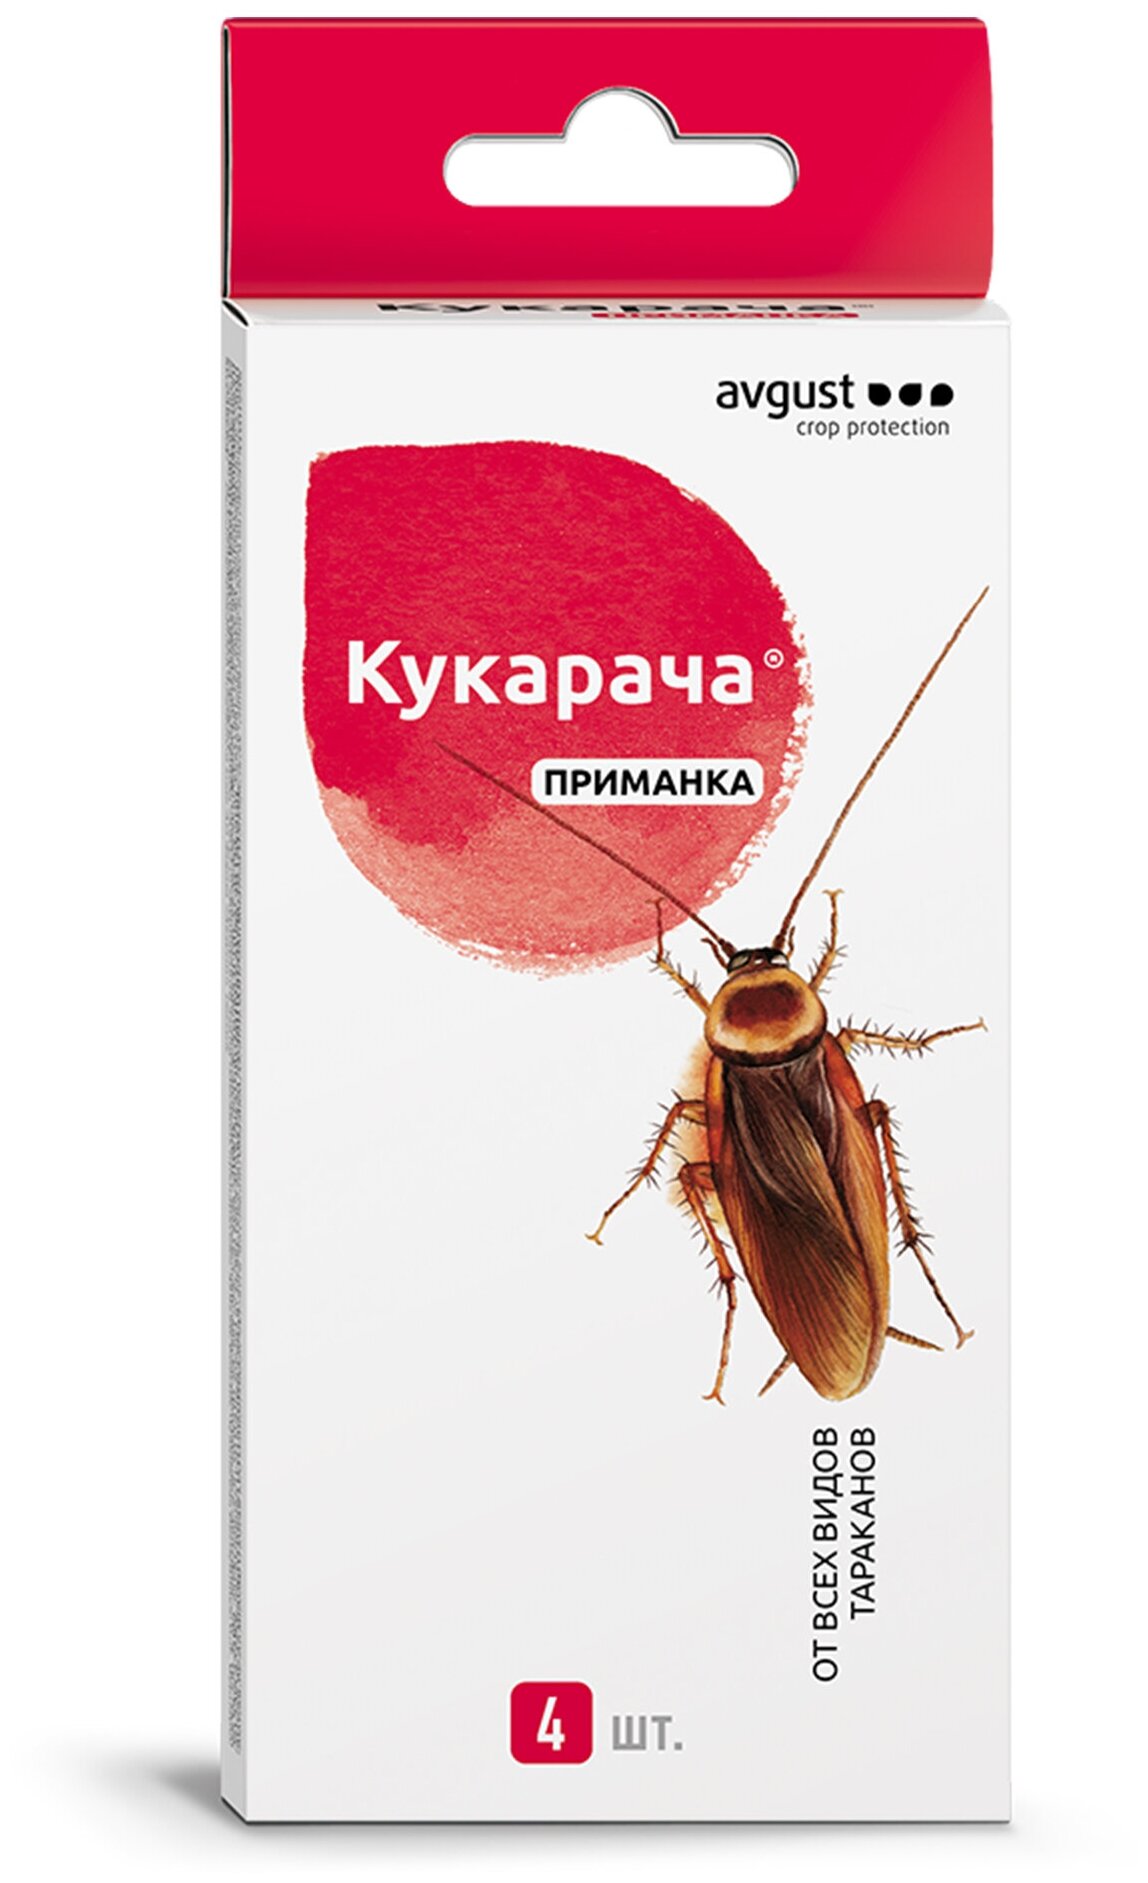 Средства против прочих вредных насекомых Avgust - фото №1